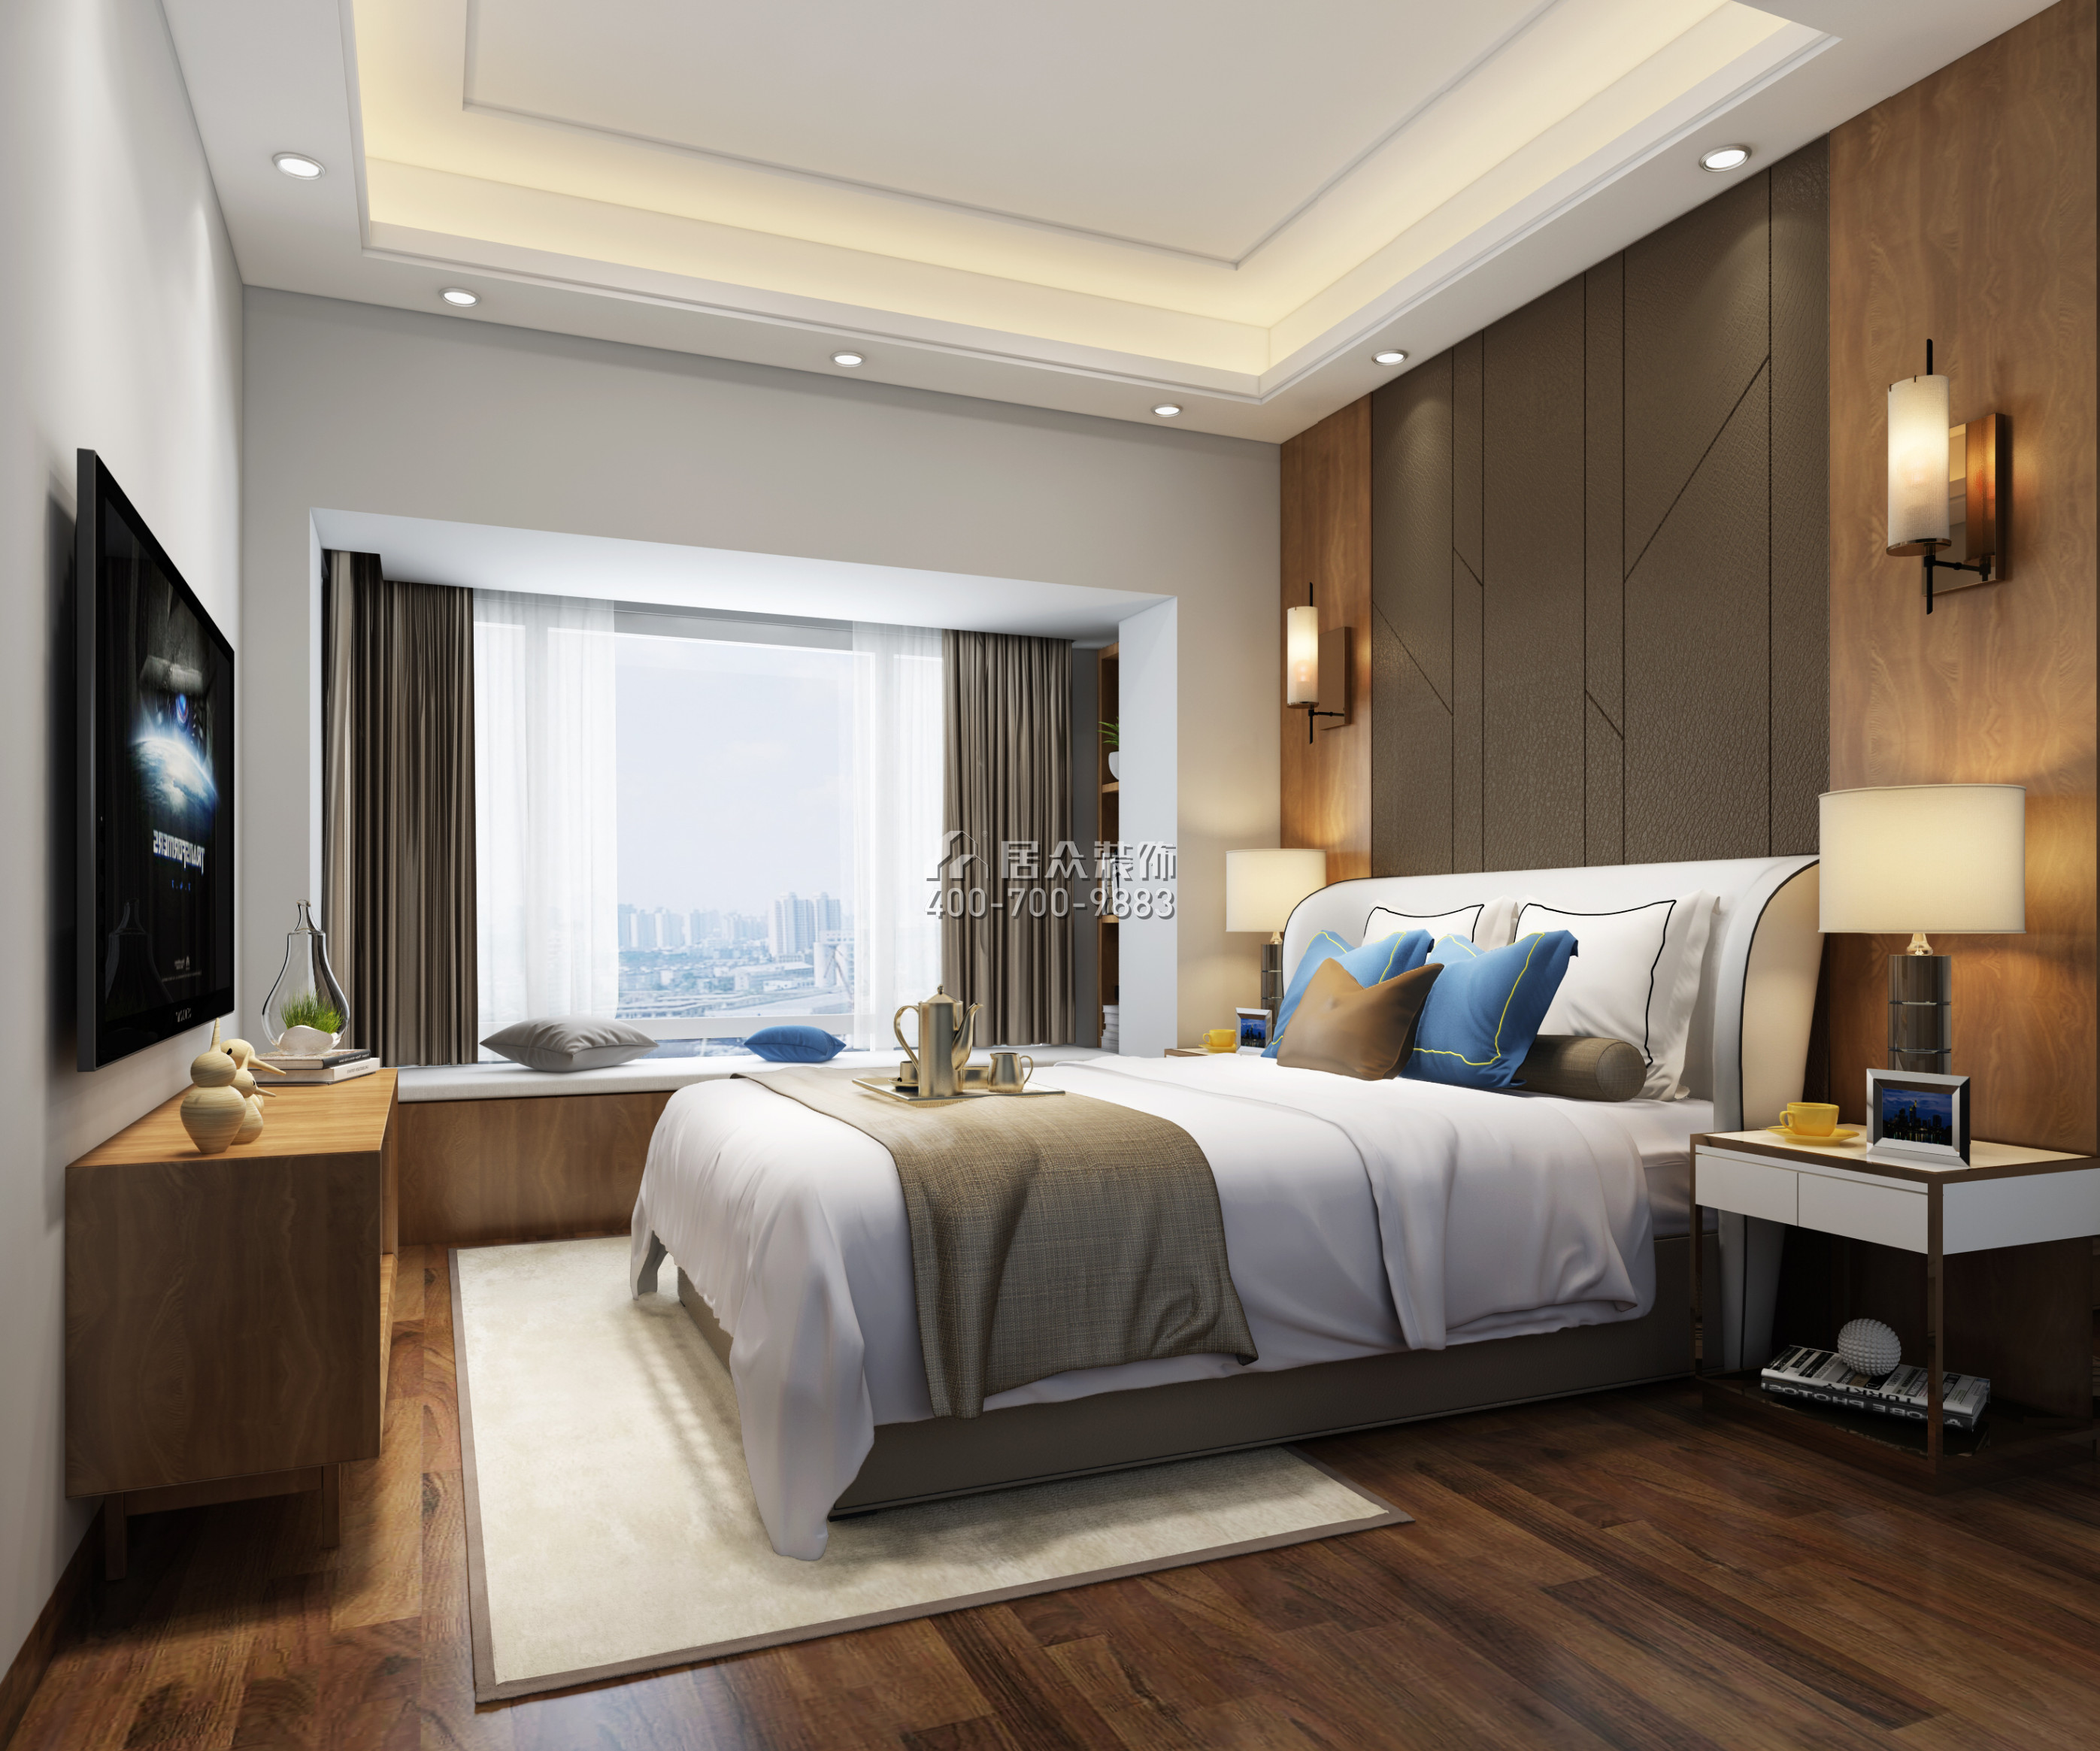 星河银湖谷110平方米现代简约风格平层户型卧室装修效果图